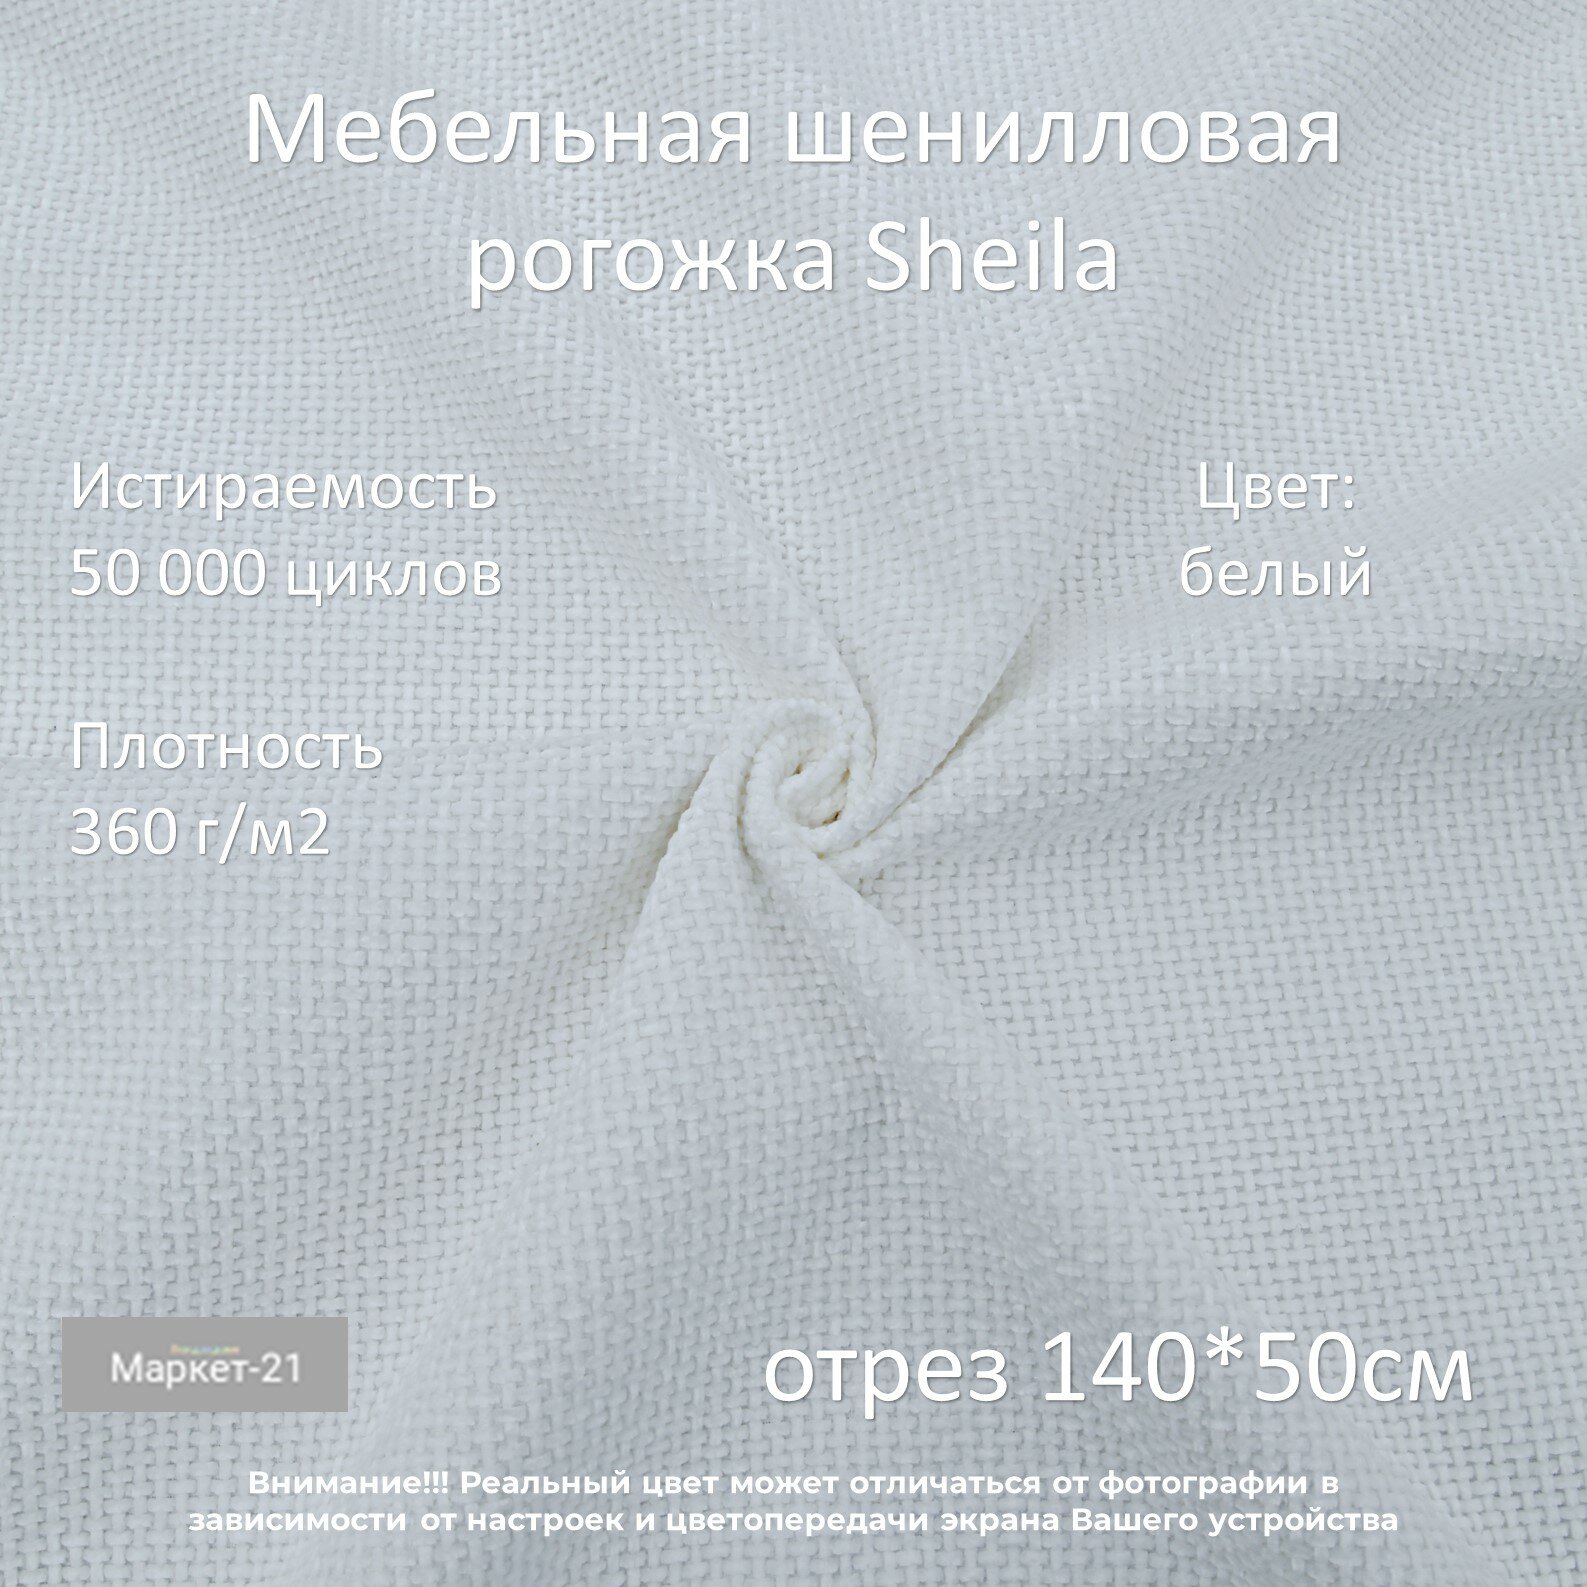 Мебельная шенилловая рогожка Sheila белая отрез 0,5м